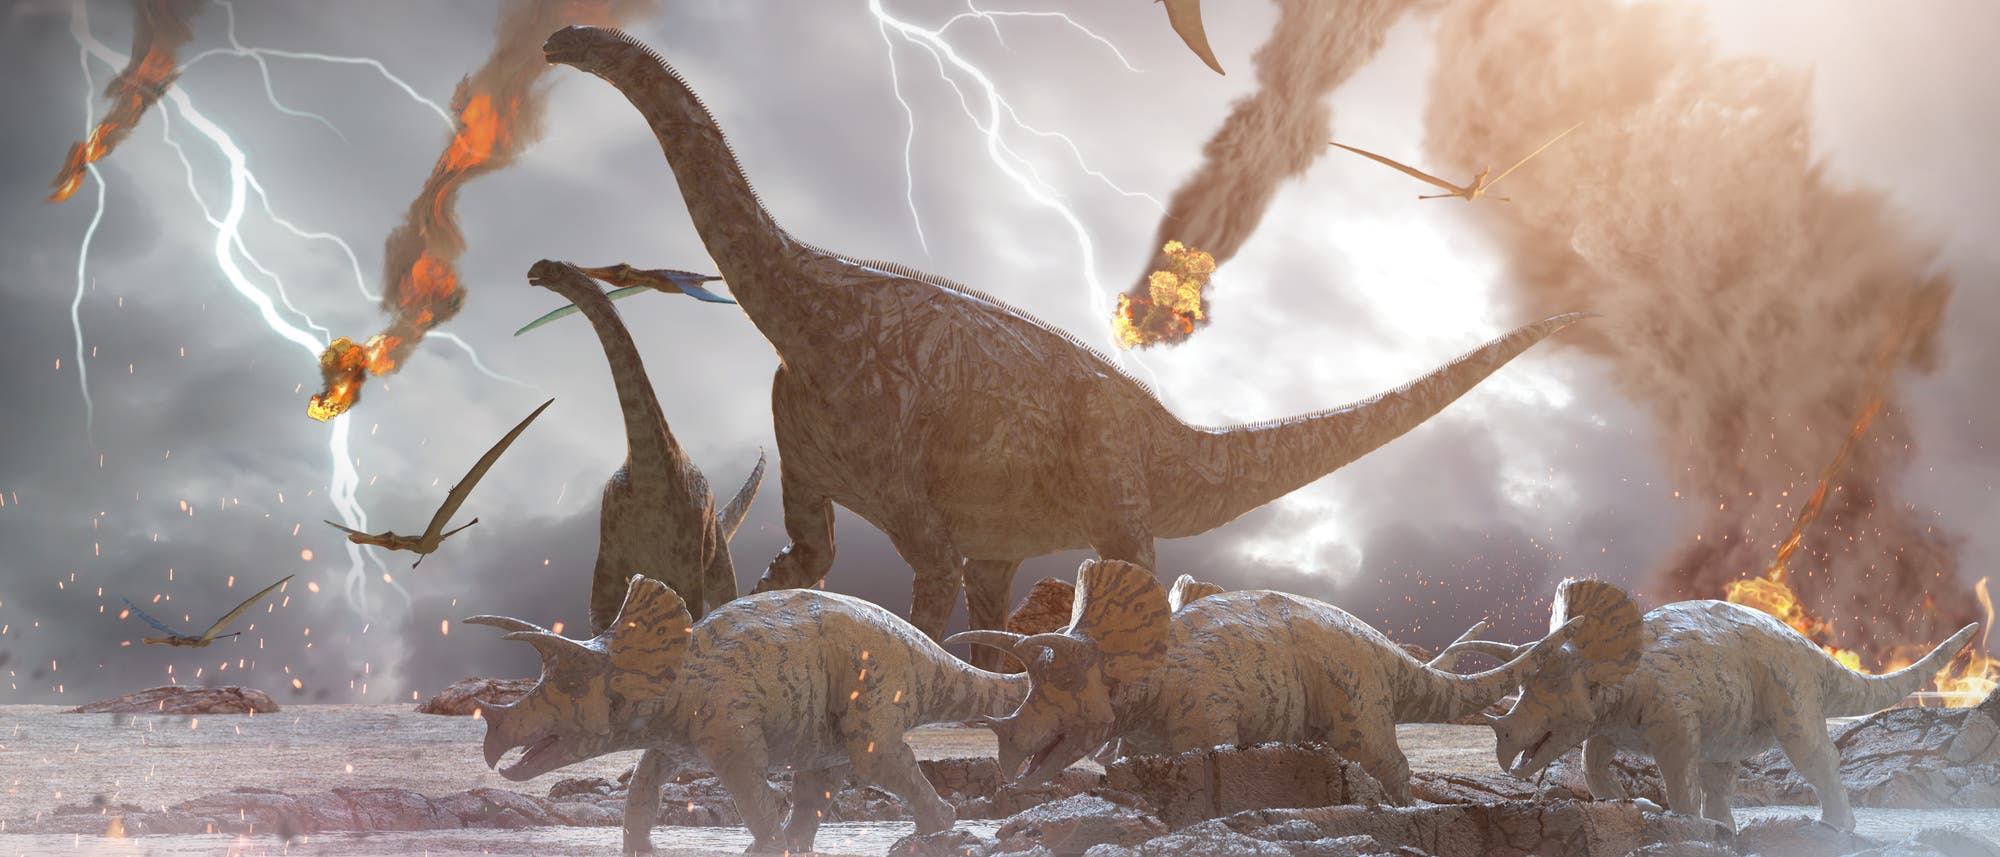 Asteroideneinschlag vernichtet Dinosaurier